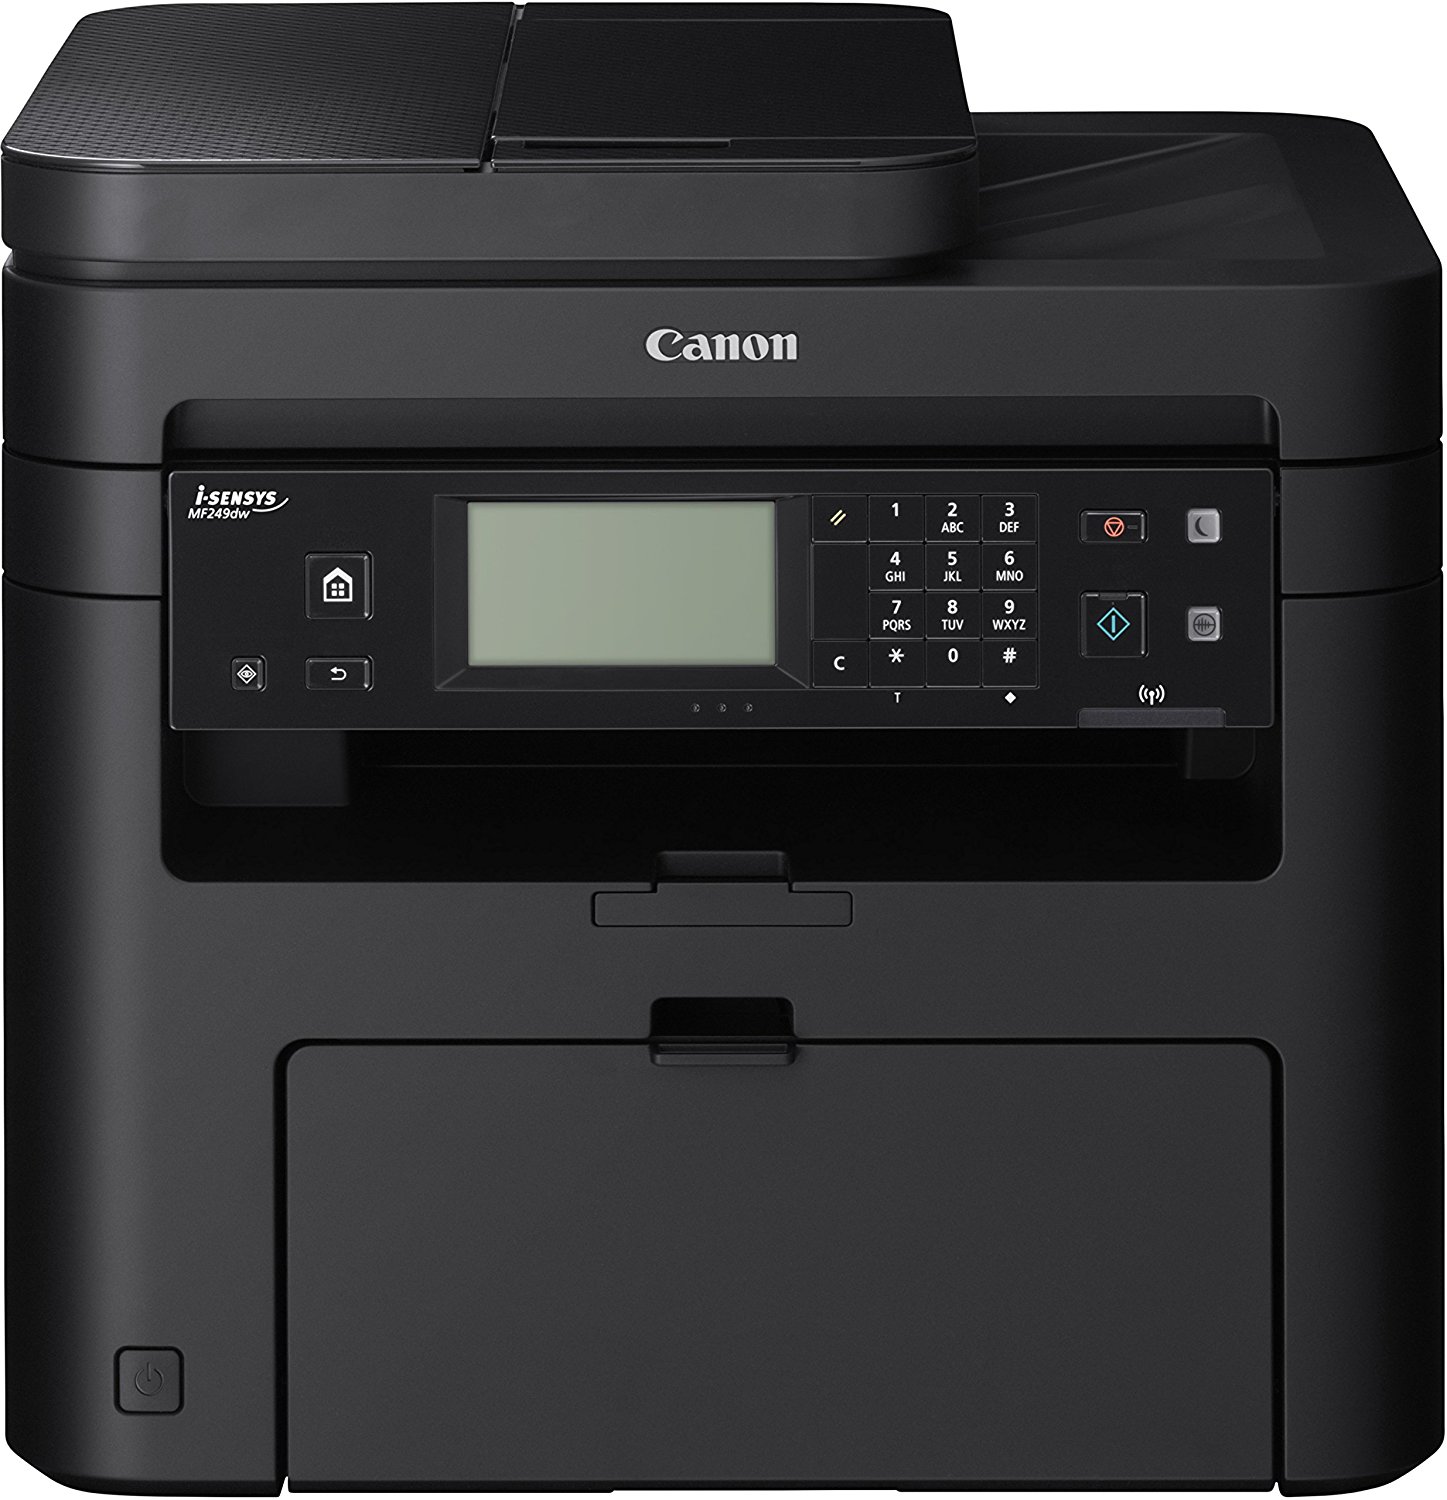 Canon i-SENSYS impresora láser